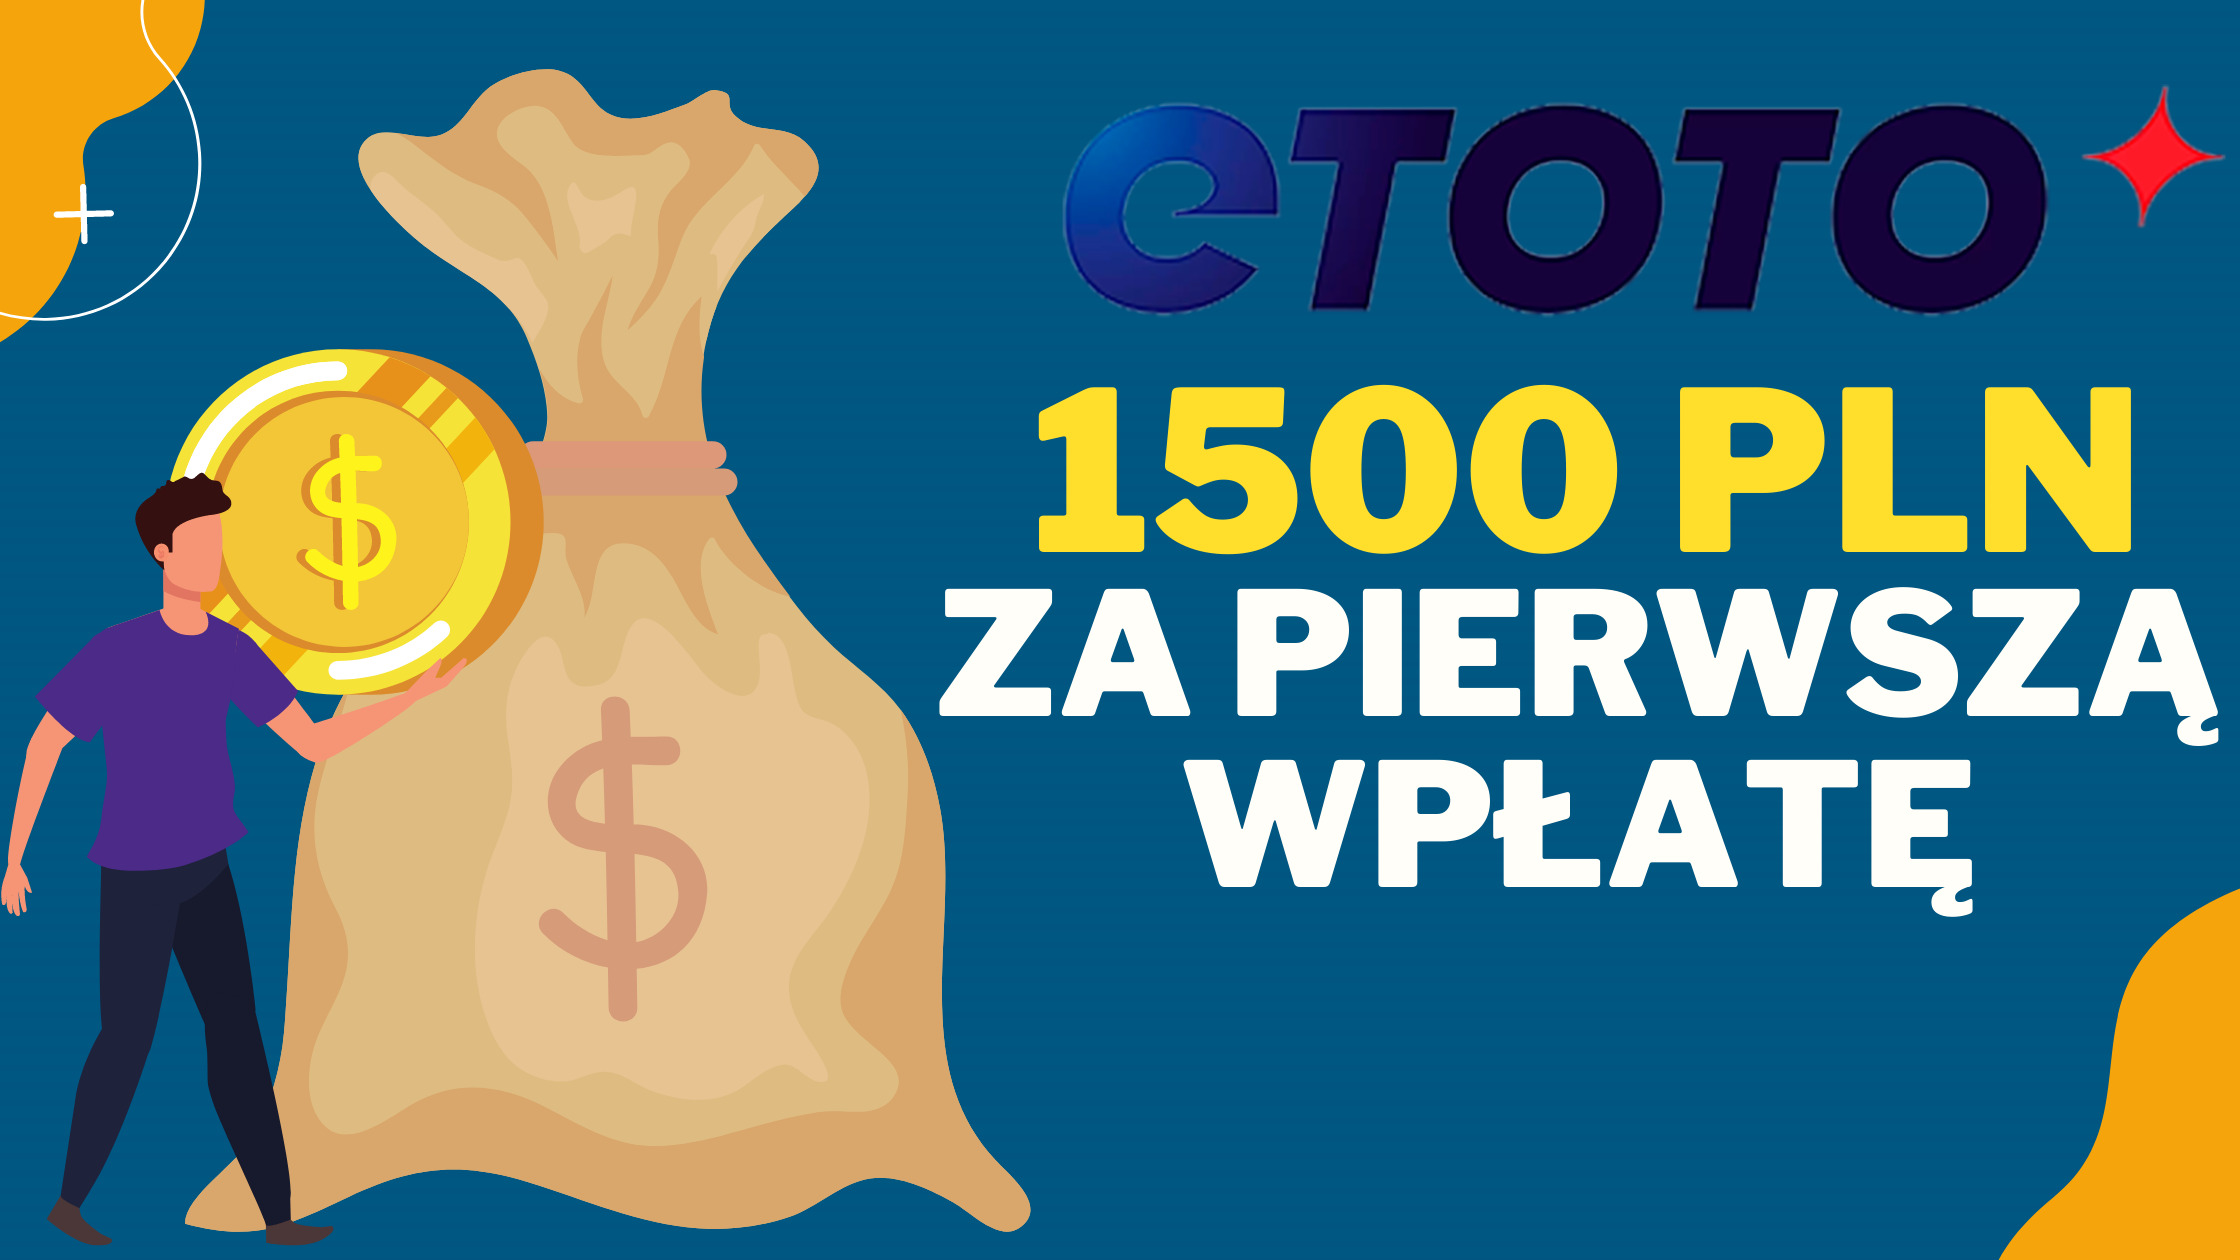 Legalny bukmacher Etoto 1500 PLN za pierwszą wpłatę